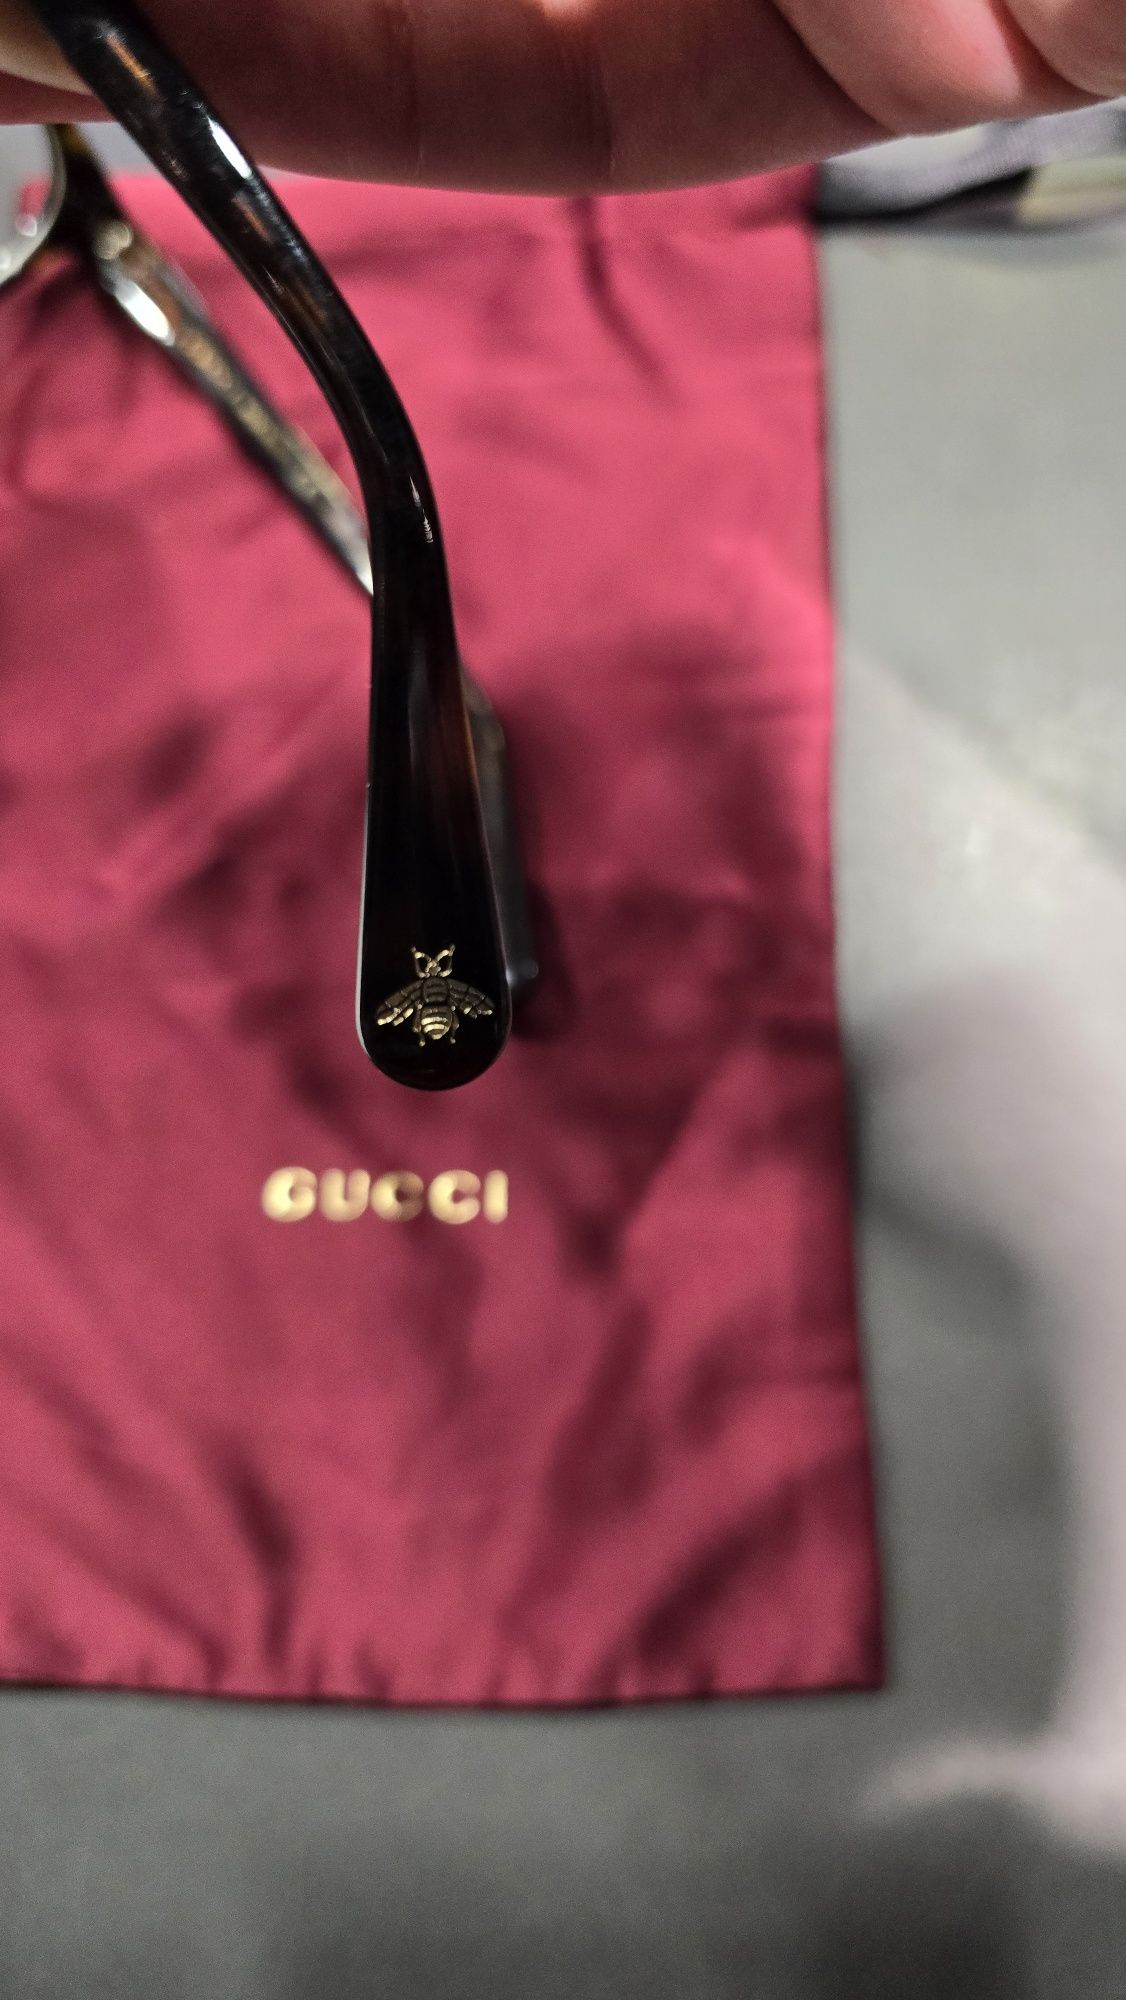 Okulary korekcyjne Gucci